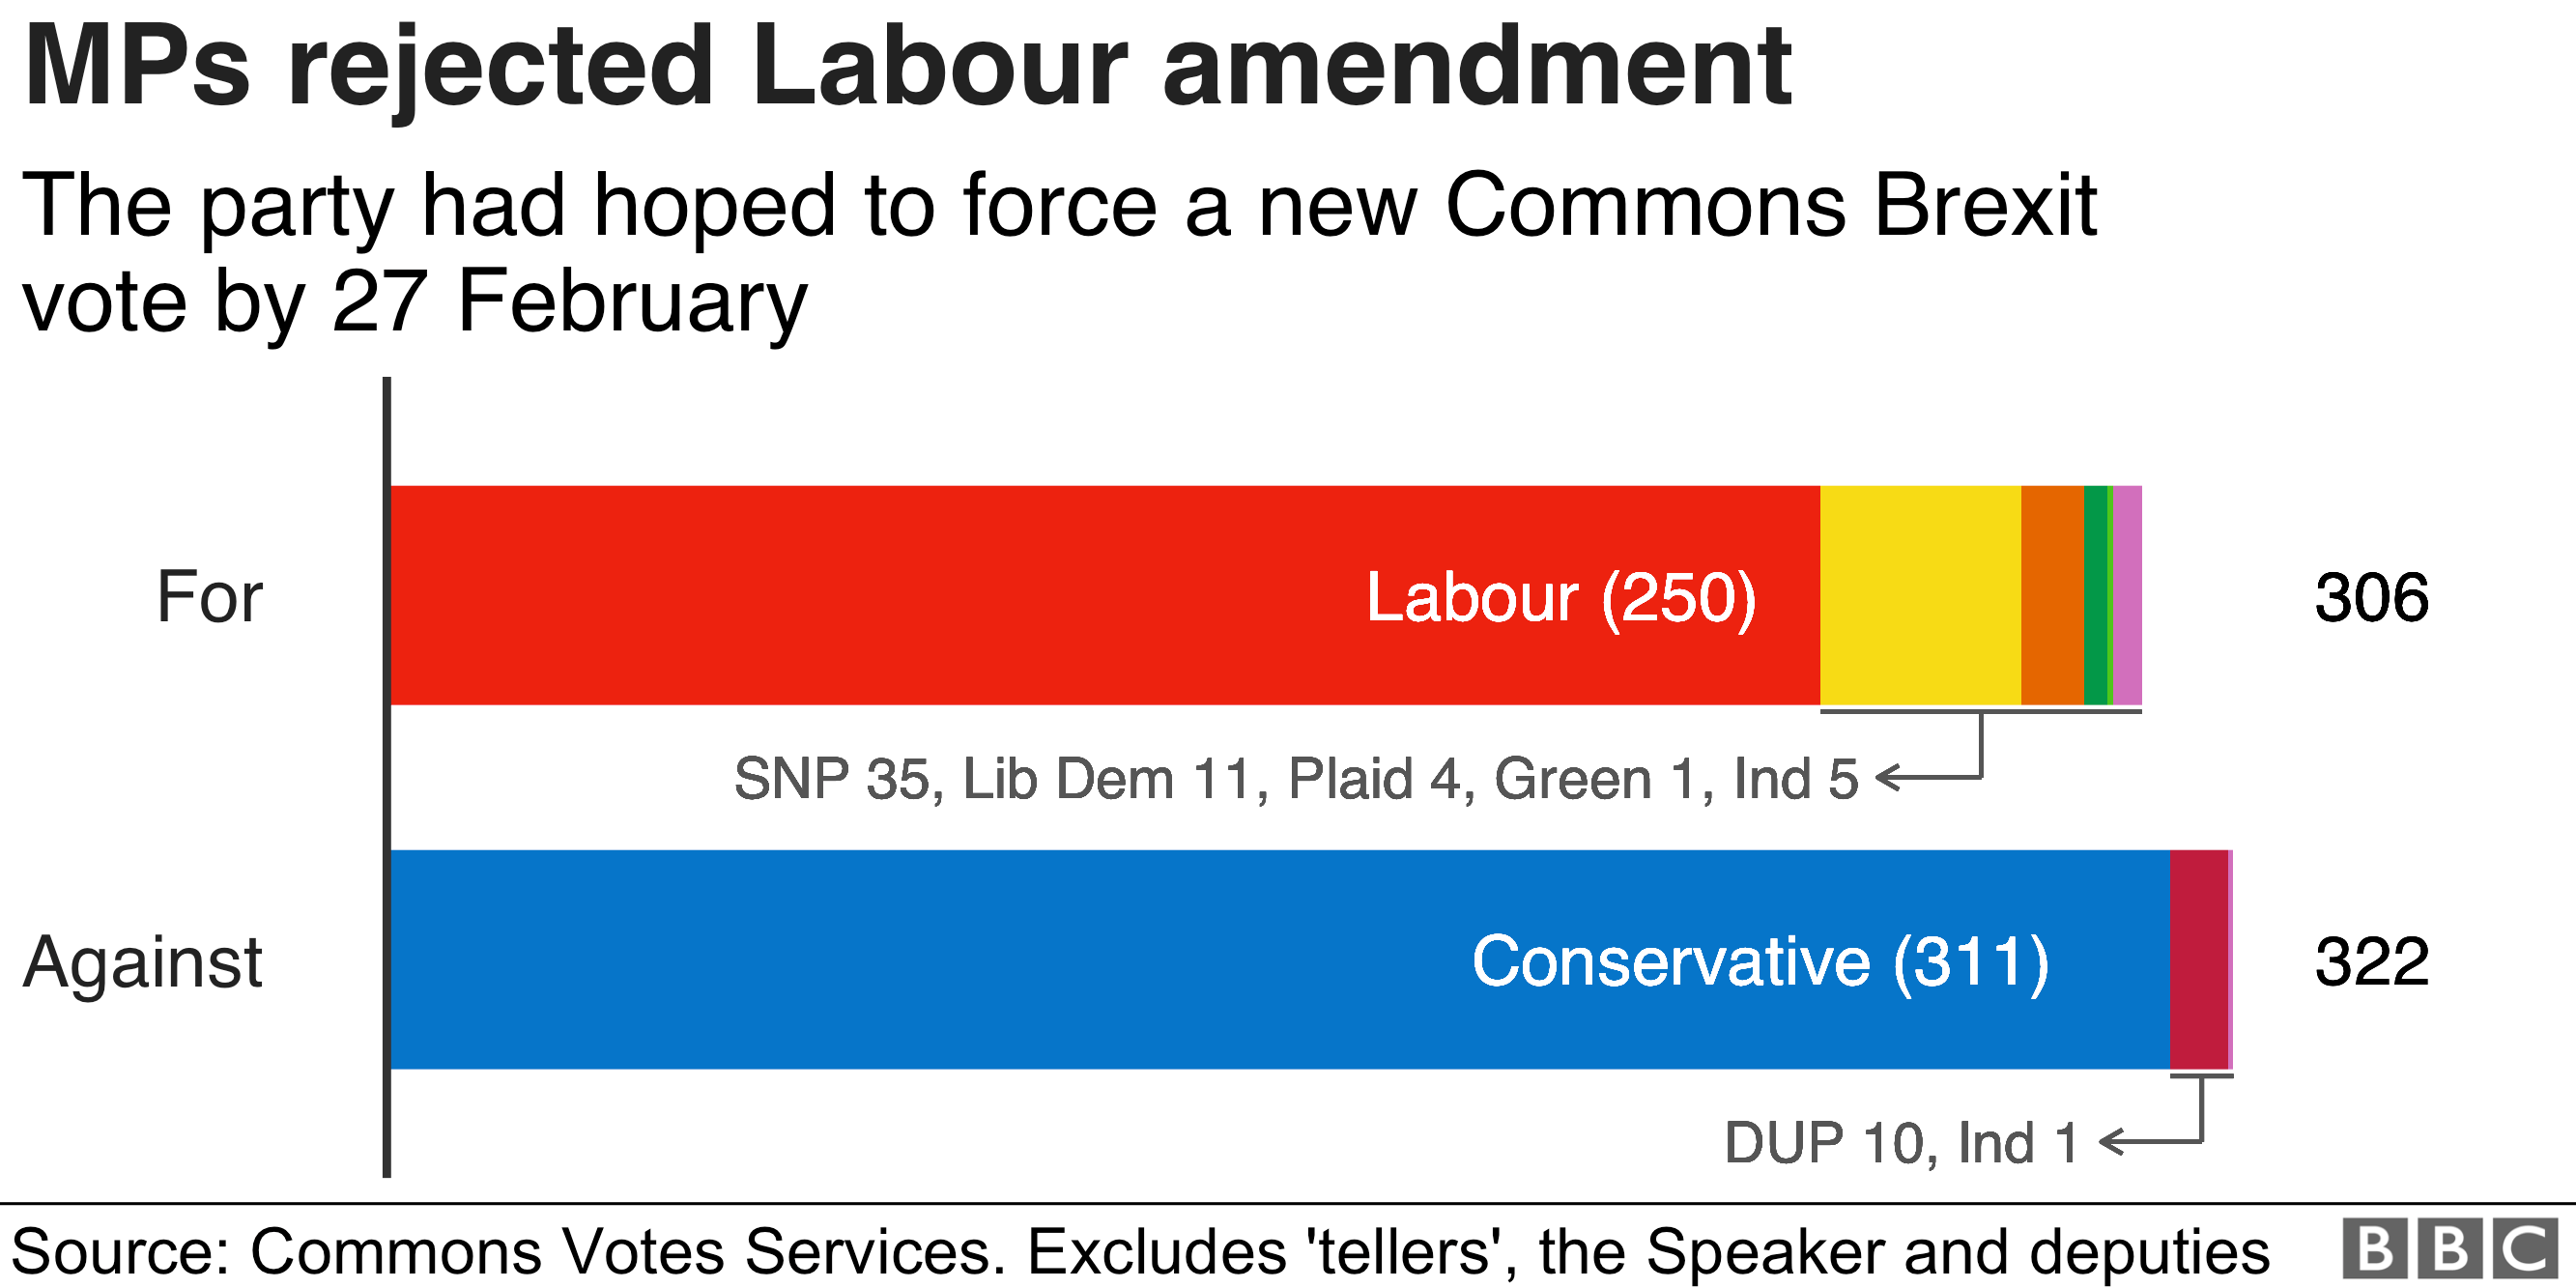 Депутаты отклоняют поправку лейбористской партии, чтобы заставить новое голосование общин по Brexit к 27 февраля 306 до 322